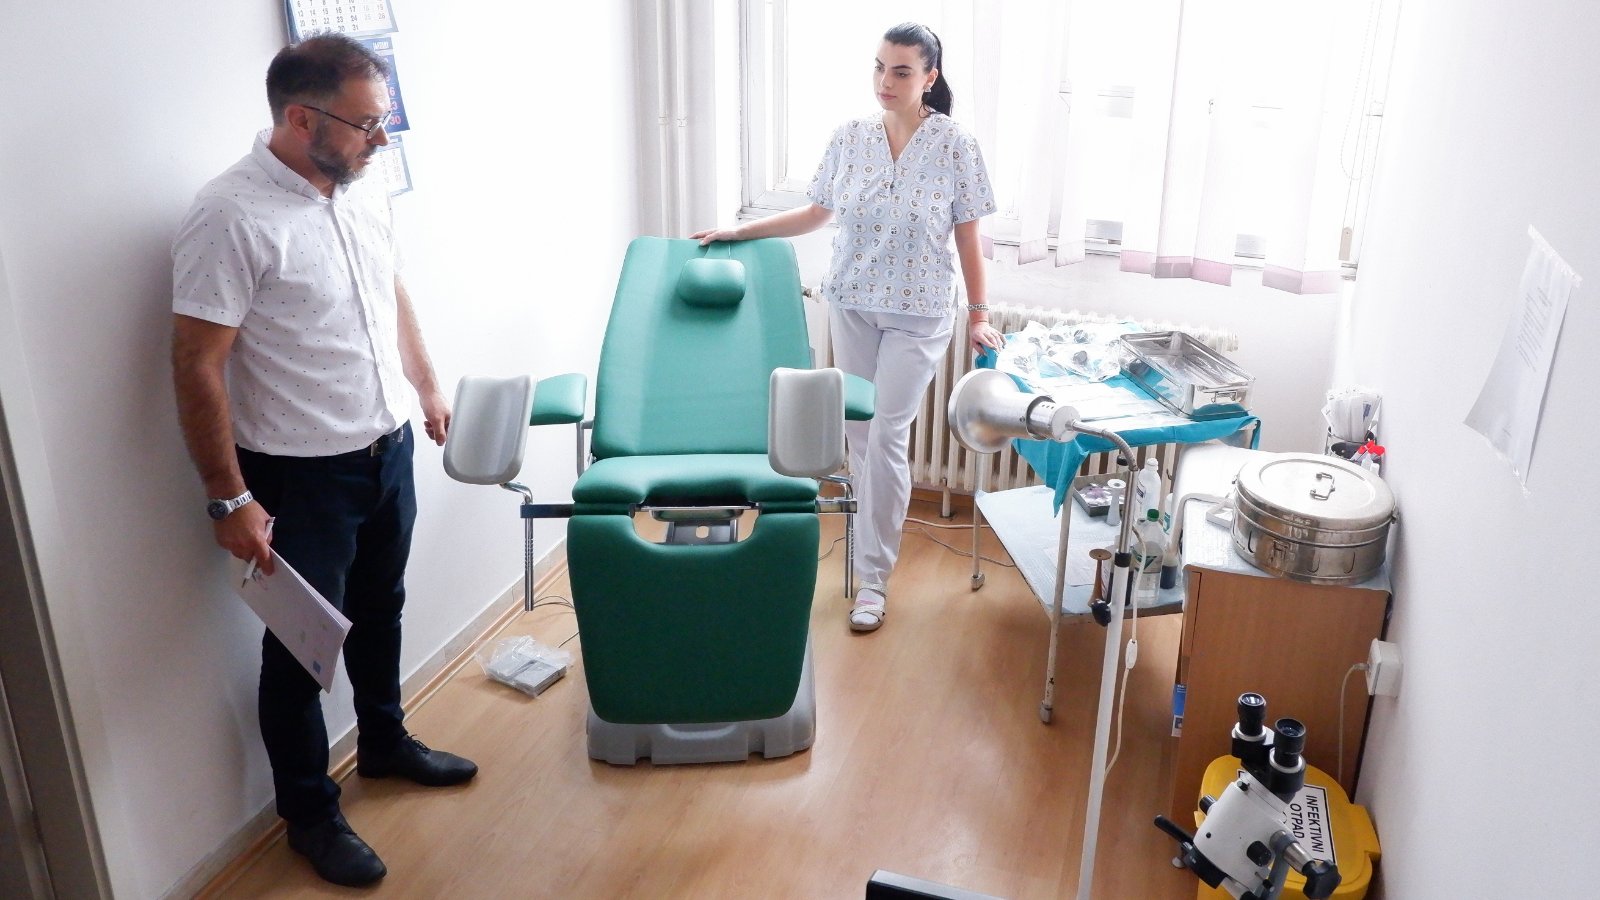 L’UE ha donato attrezzature mediche alle aziende Novi Pazar, Tutin e Raška